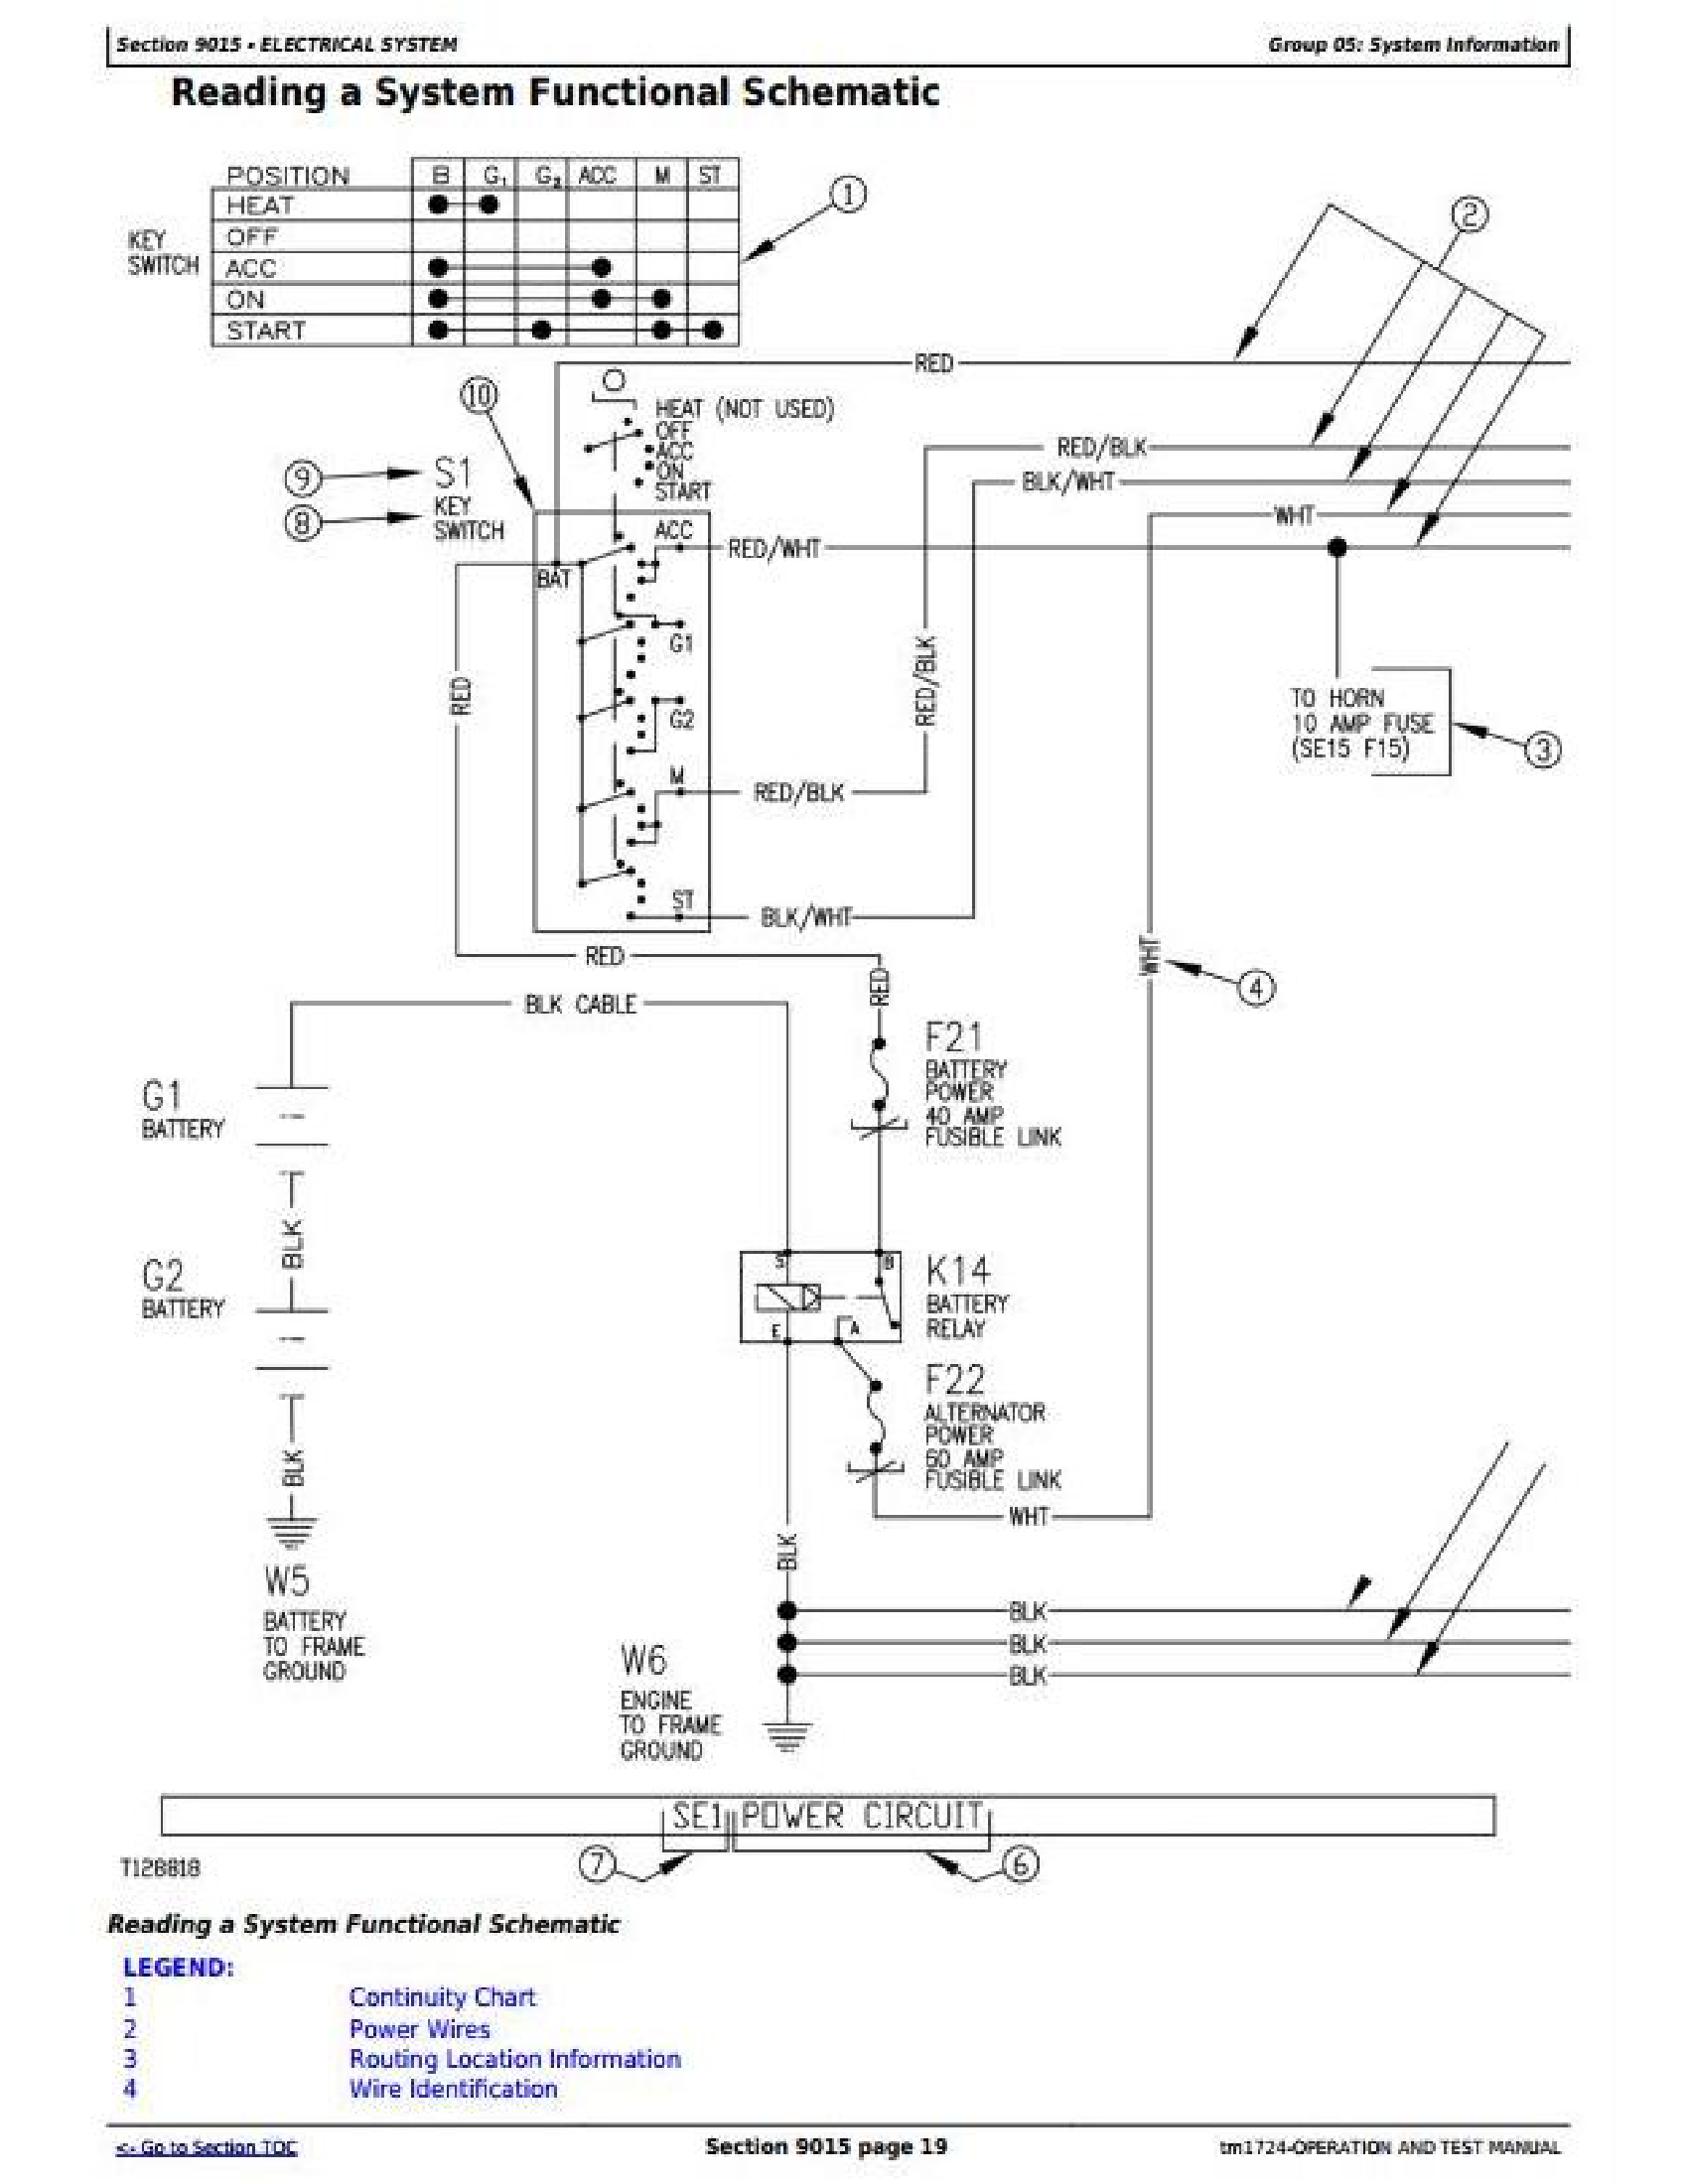 John Deere V461M manual pdf